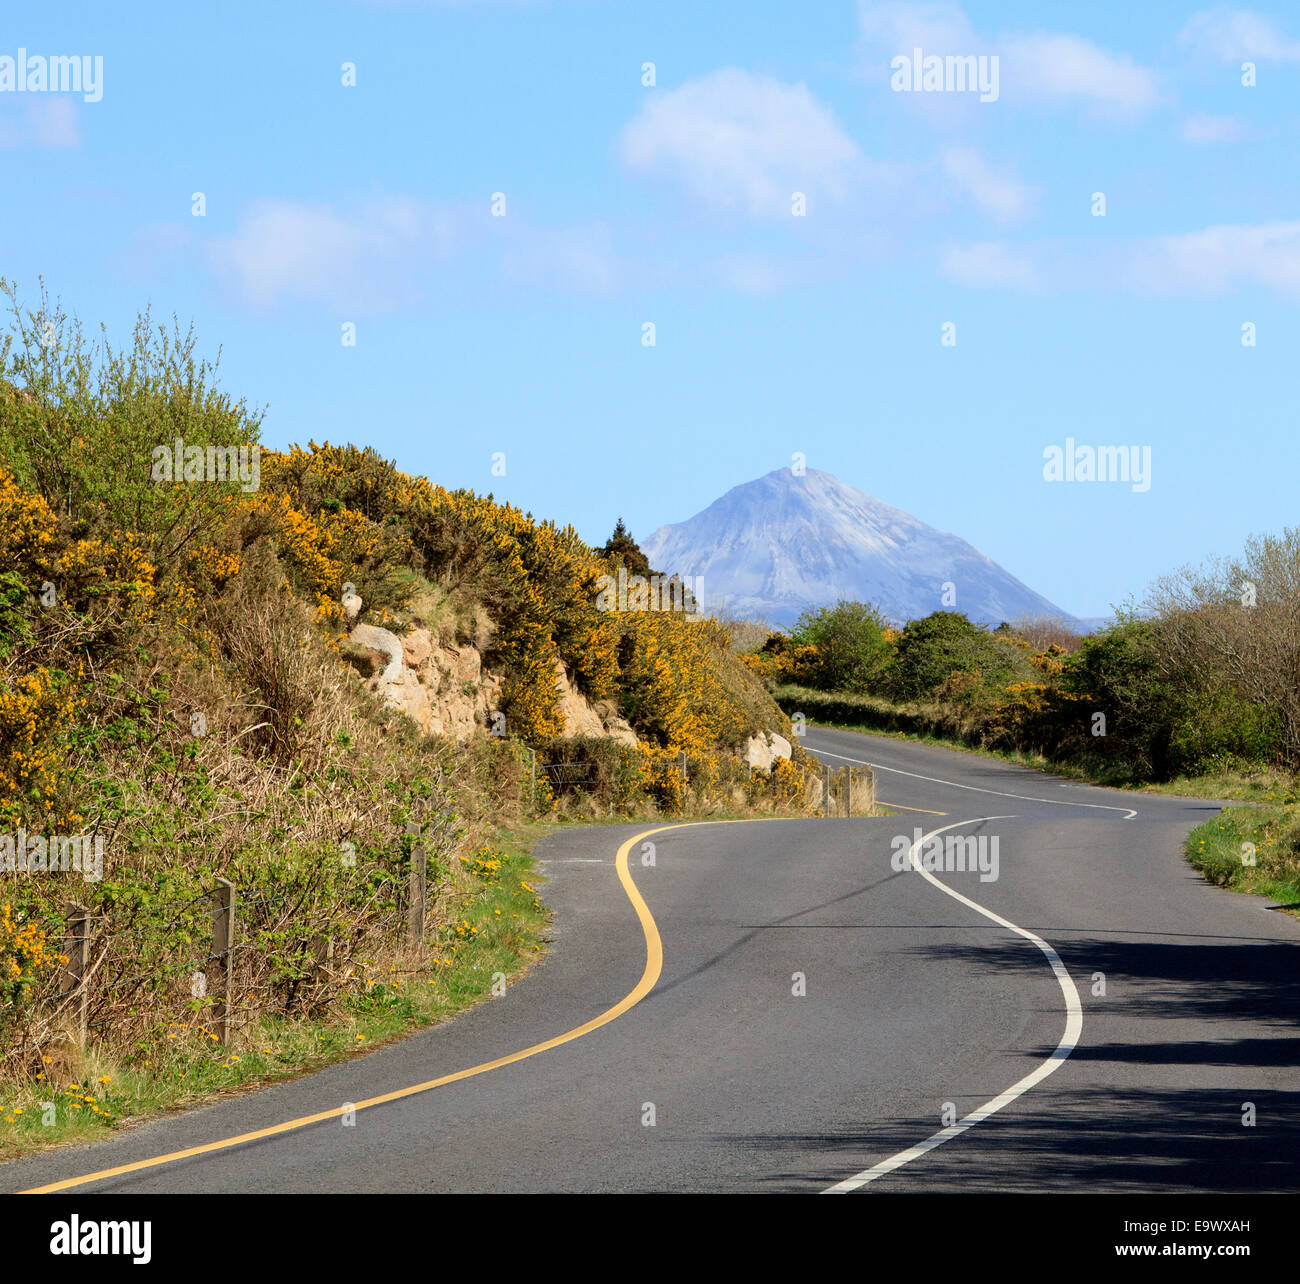 Eine kurvenreiche irische Landstraße in der Grafschaft Donegal mit dem Berg Errigal, in der Ferne unter einem sommerblauen Himmel. Stockfoto